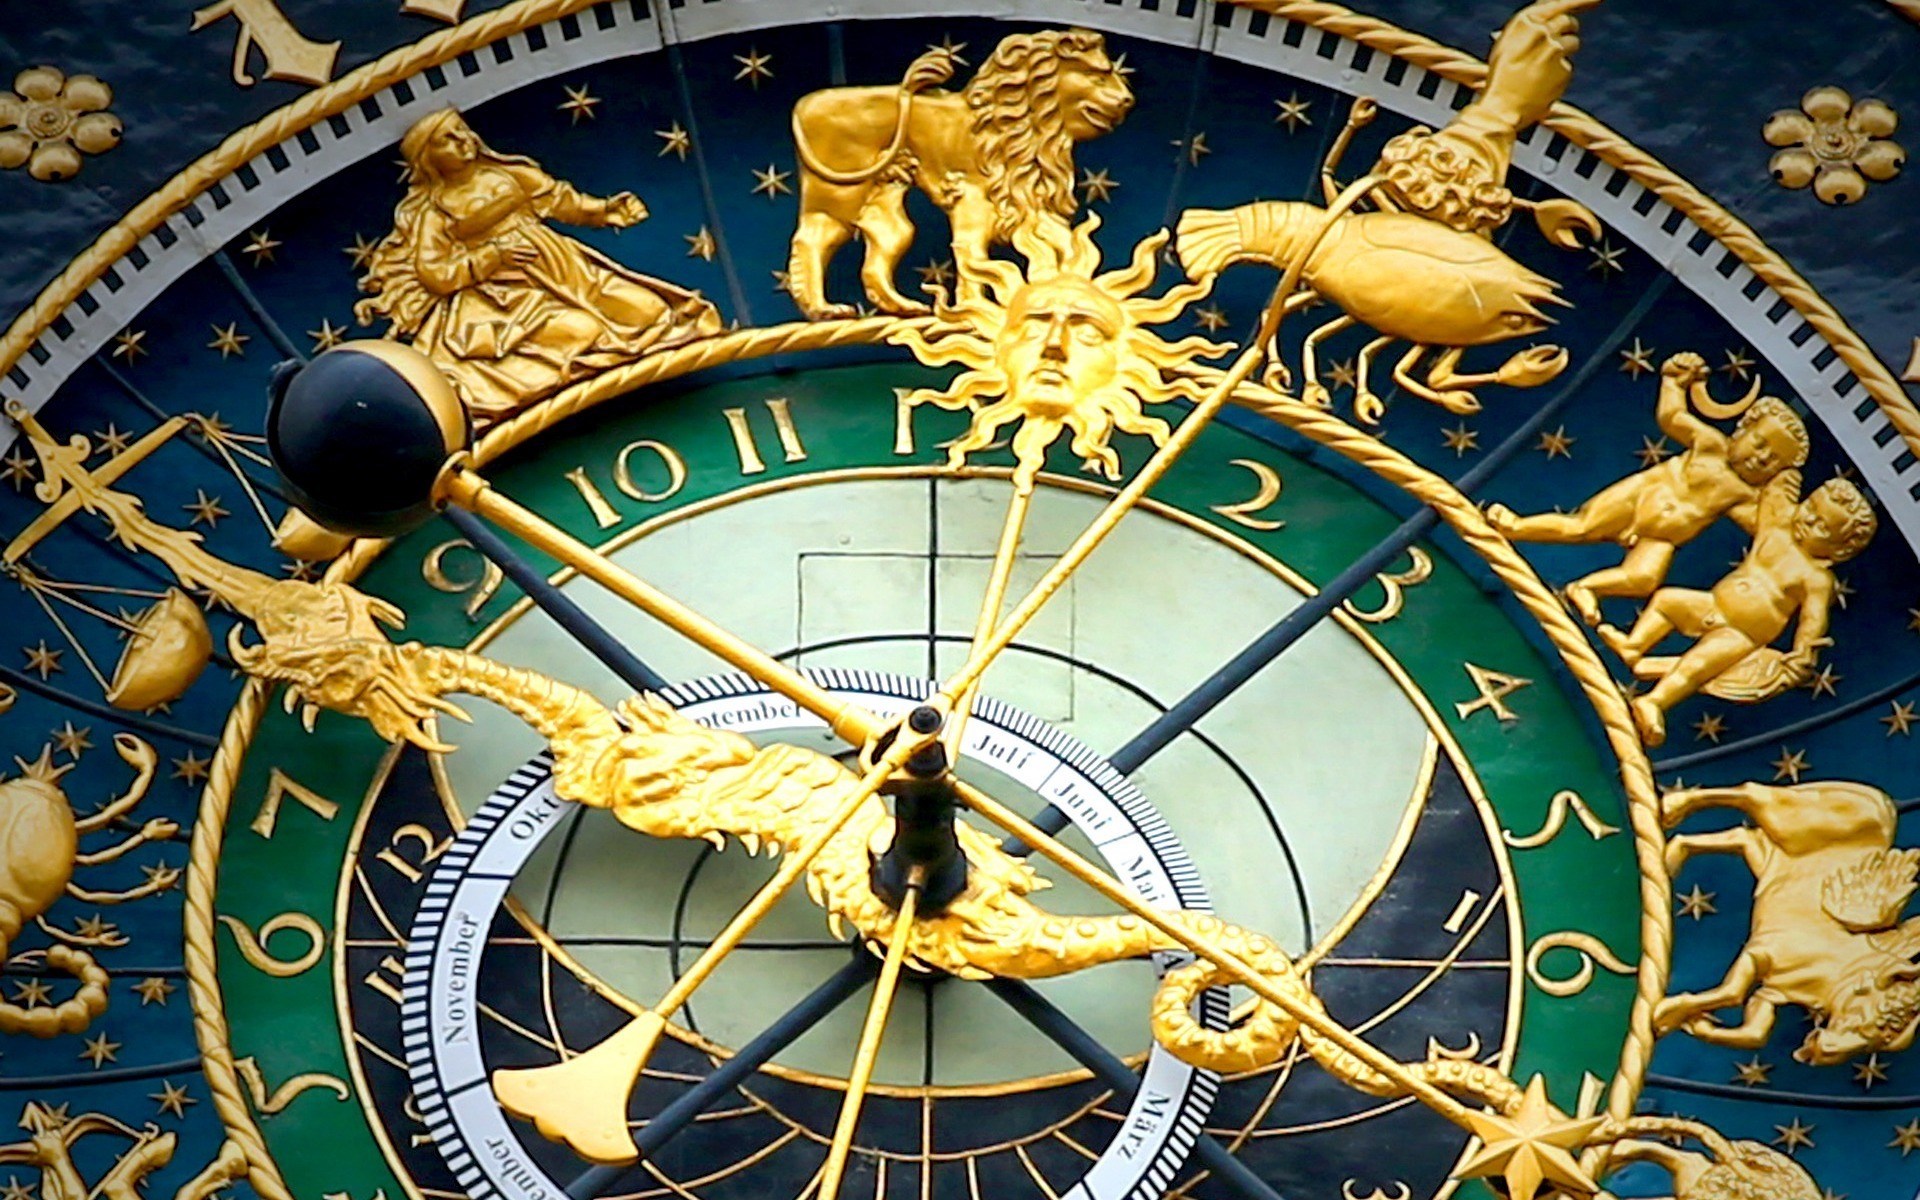 Jaki jest idealny cel podróży na podstawie Twojego znaku zodiaku?